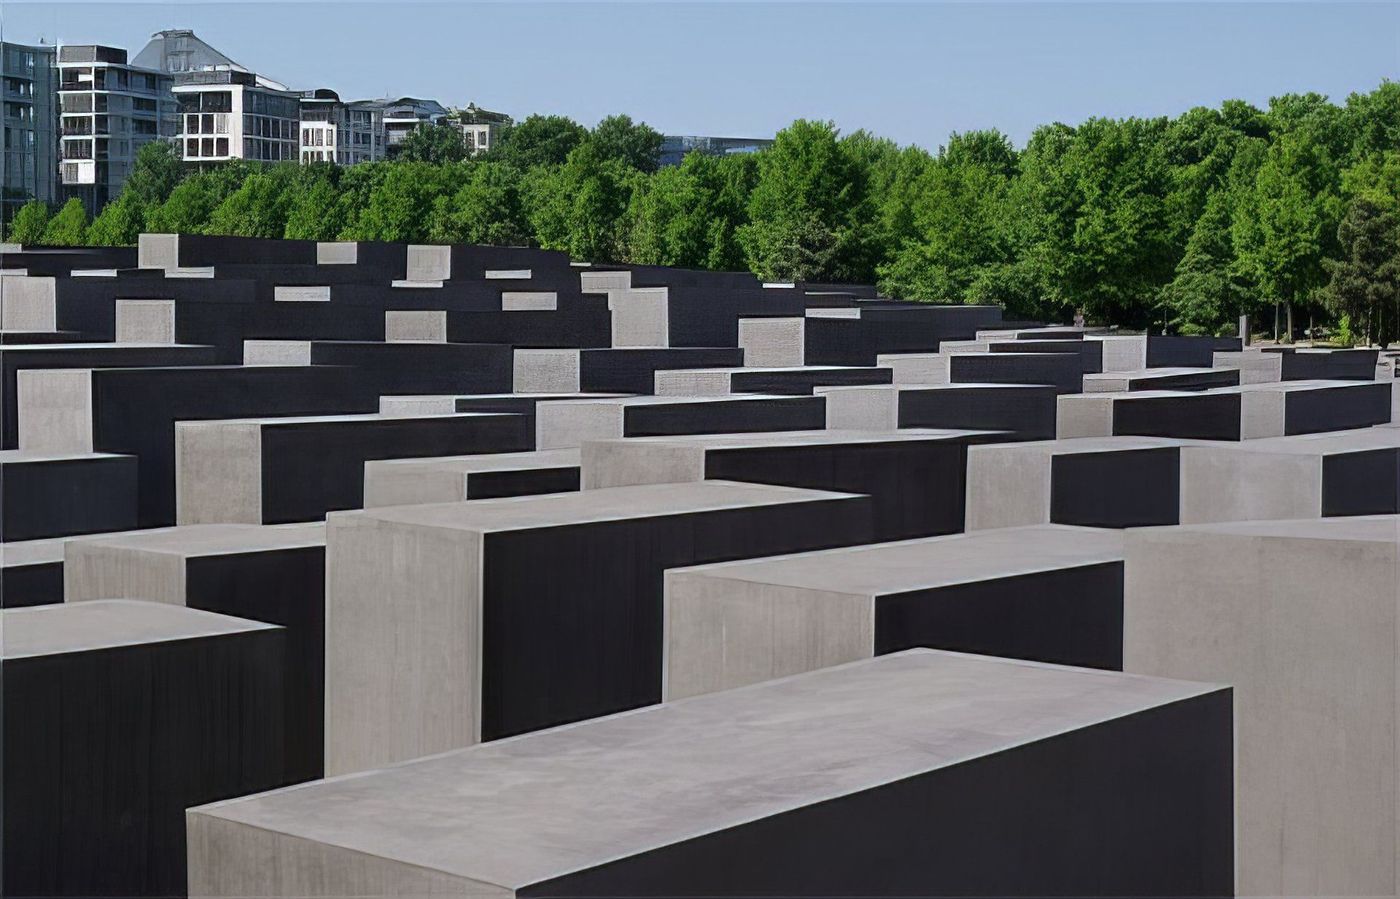 Mémorial de l’Holocauste (Holocaust Mahnmal)